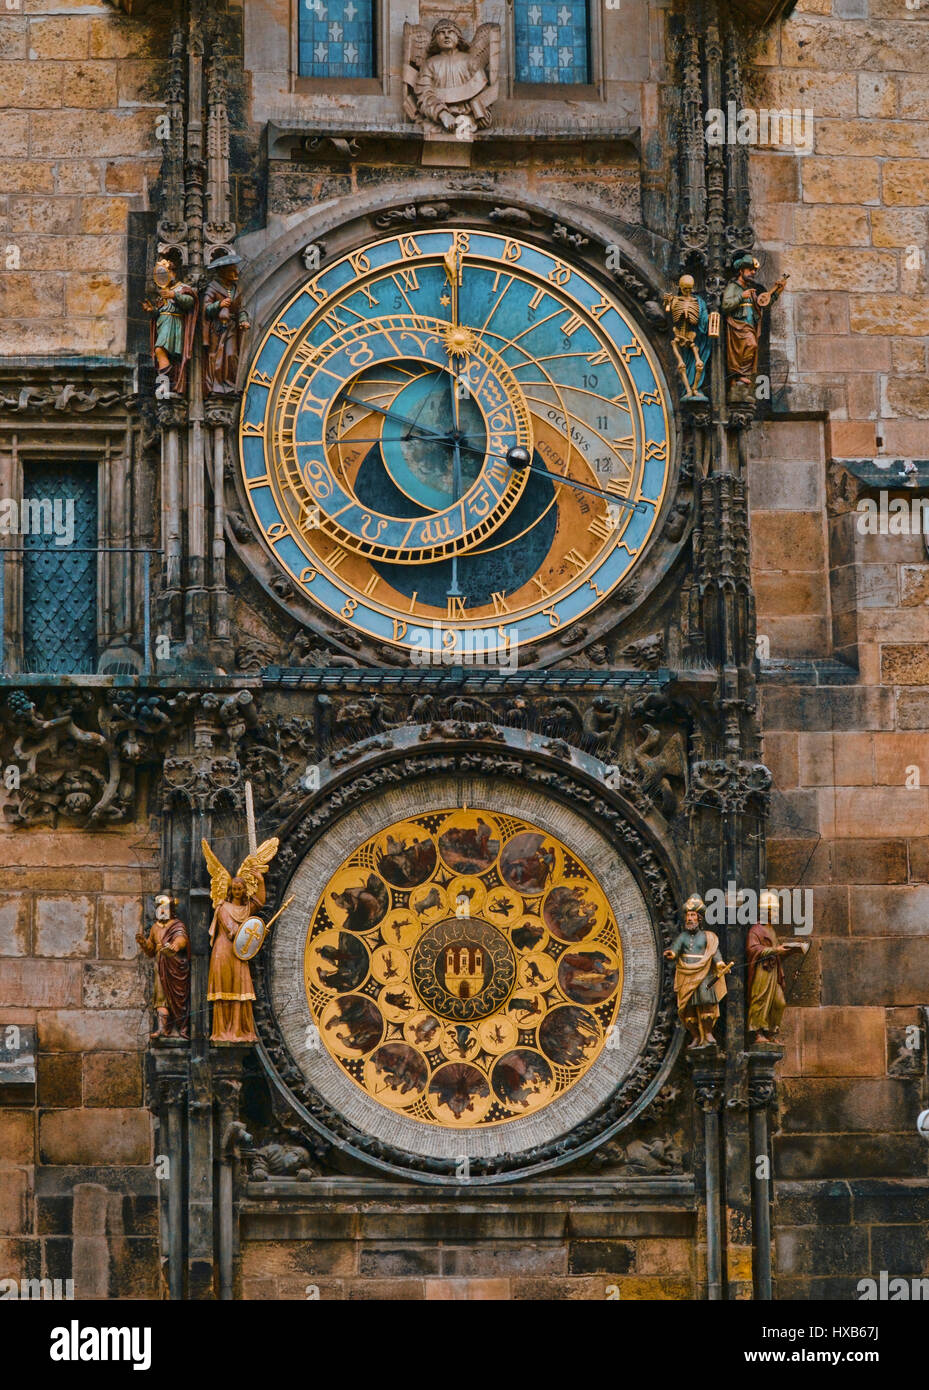 Eines der wichtigsten Sehenswürdigkeiten in Prag die astronomische Uhr am Altstädter Ring Stockfoto